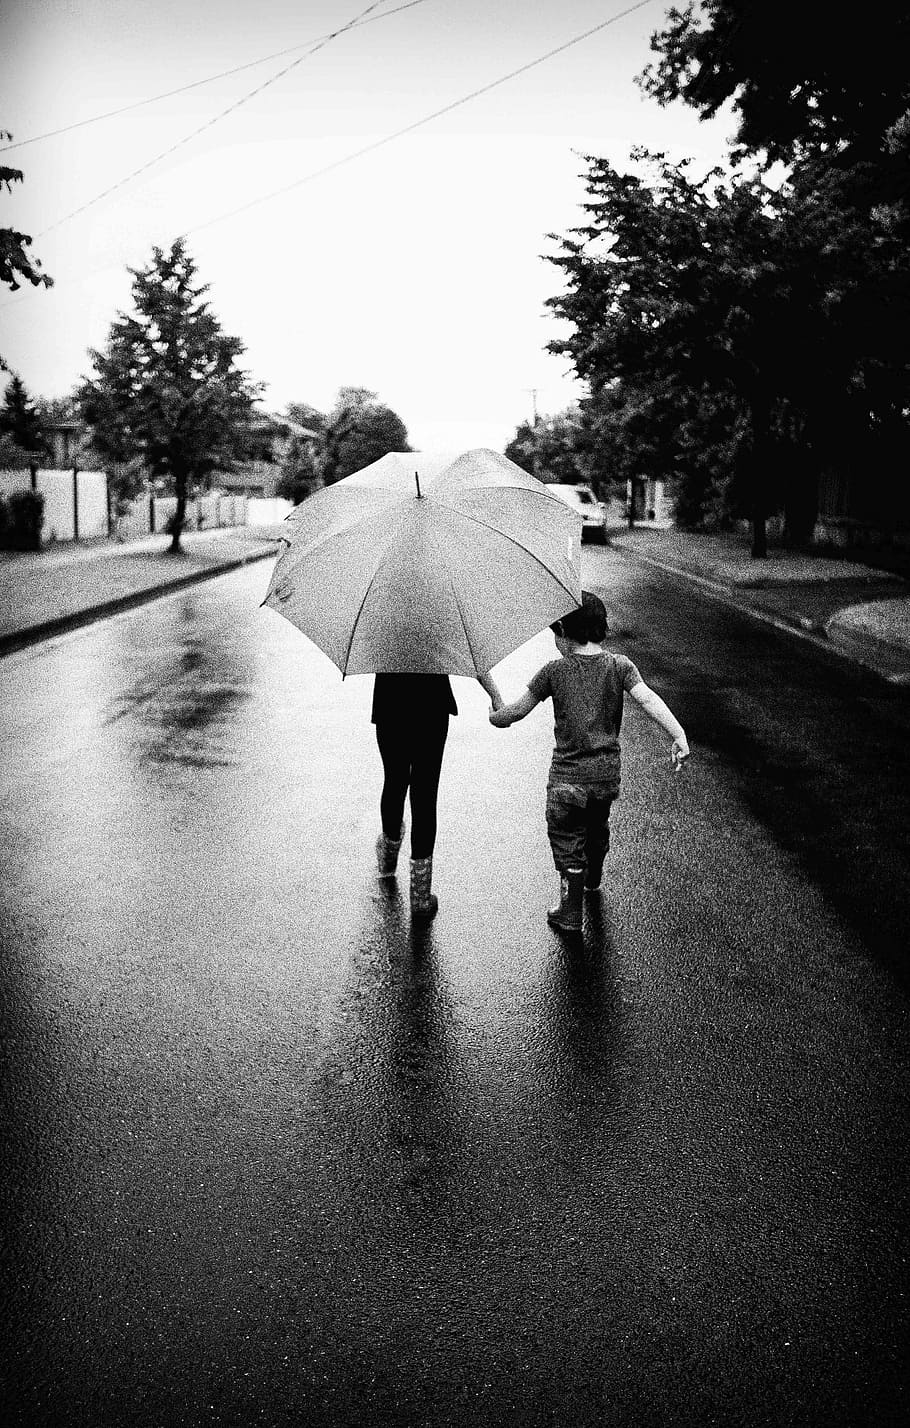 Guarda-chuva, Caminhando, Ao ar livre, chuva, jovem, derramando, diversão, preto e branco, rua, bairro